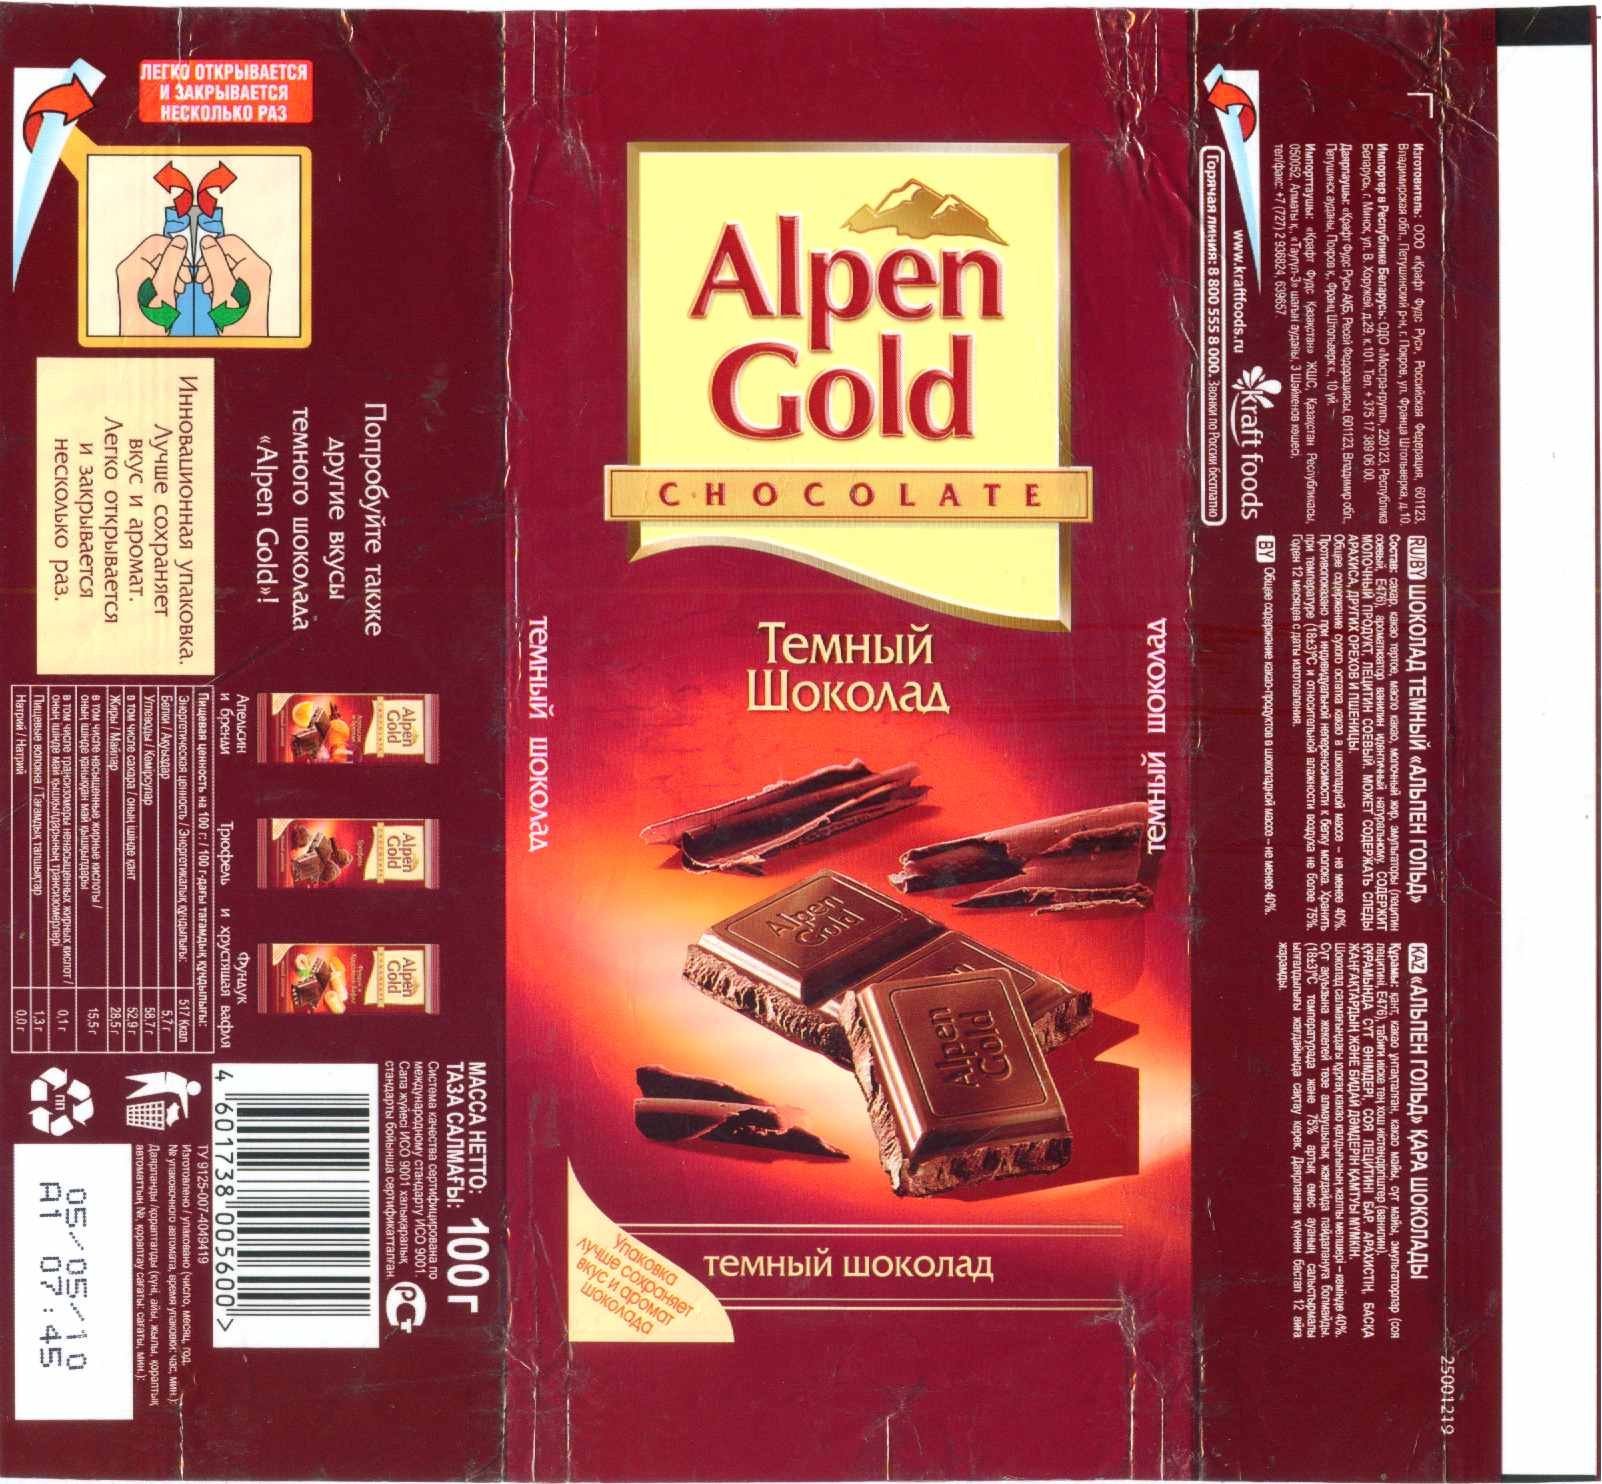 Размеры шоколада. Вкусы шоколада Альпен Гольд. Состав шоколада Альпен Гольд. Шоколад Альпен Гольд темный шоколад. Альпен Гольд темный шоколад состав.